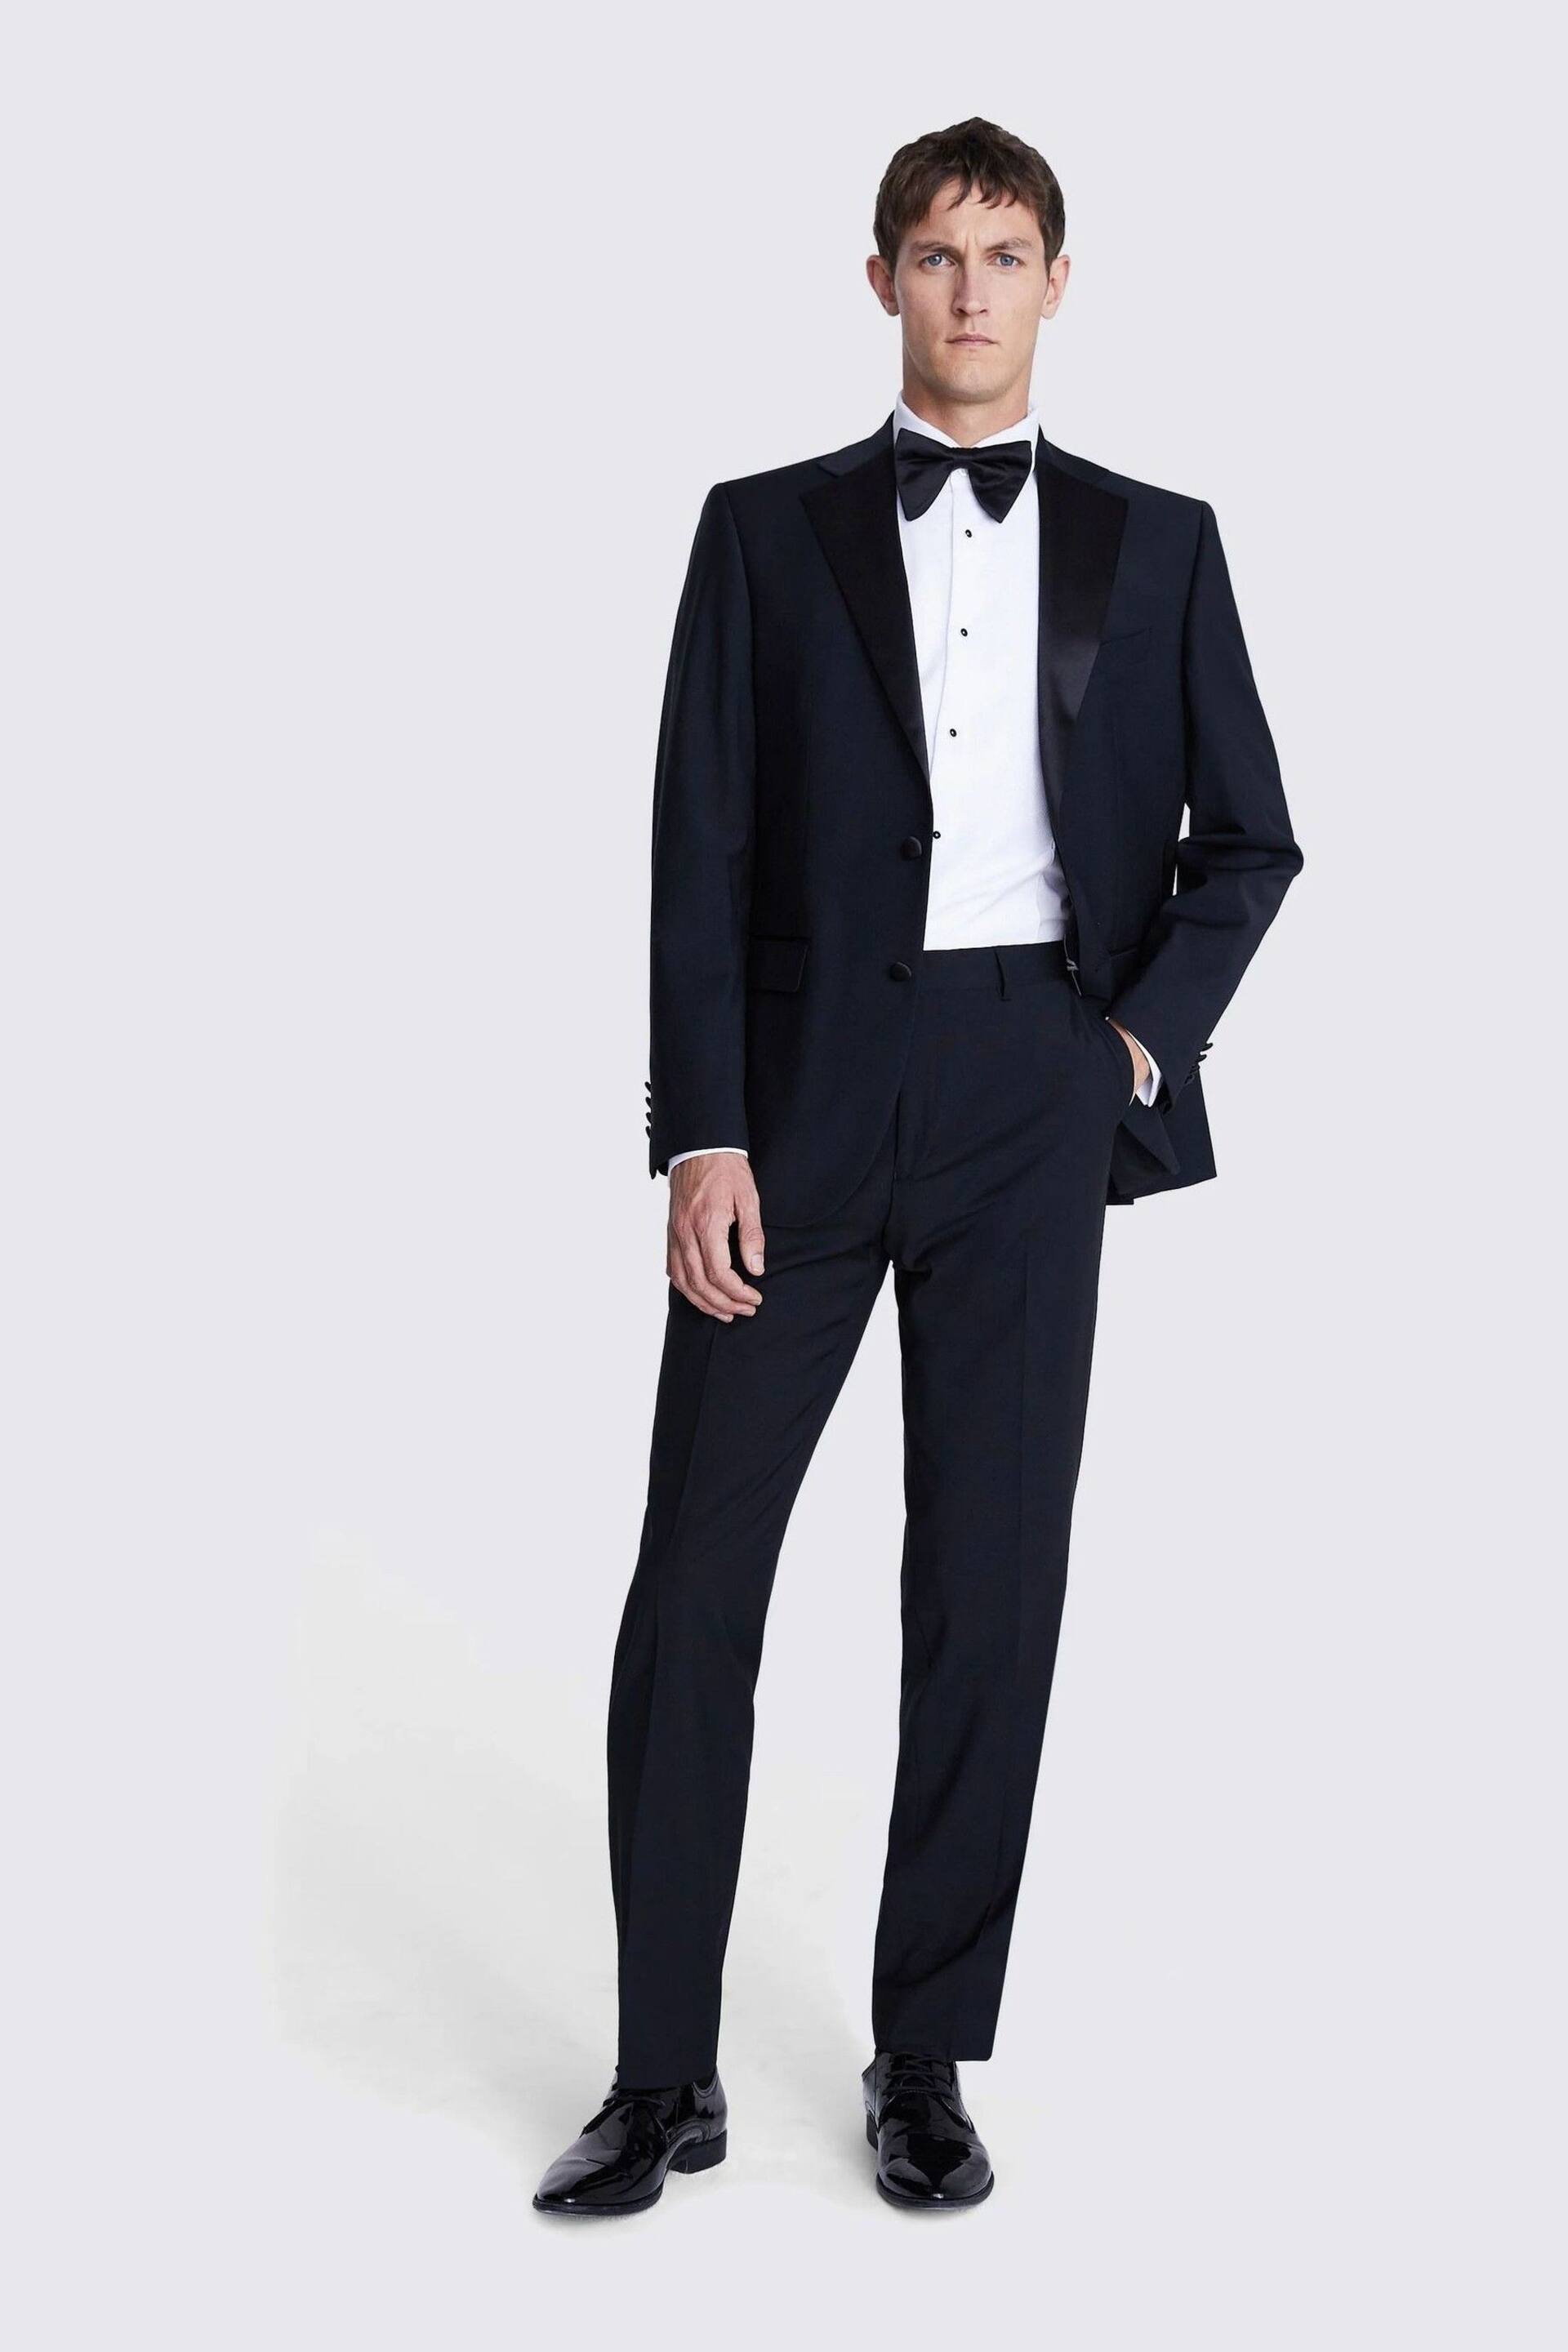 MOSS Regular Fit Black Notch Lapel Suit: Jacket - Image 2 of 4